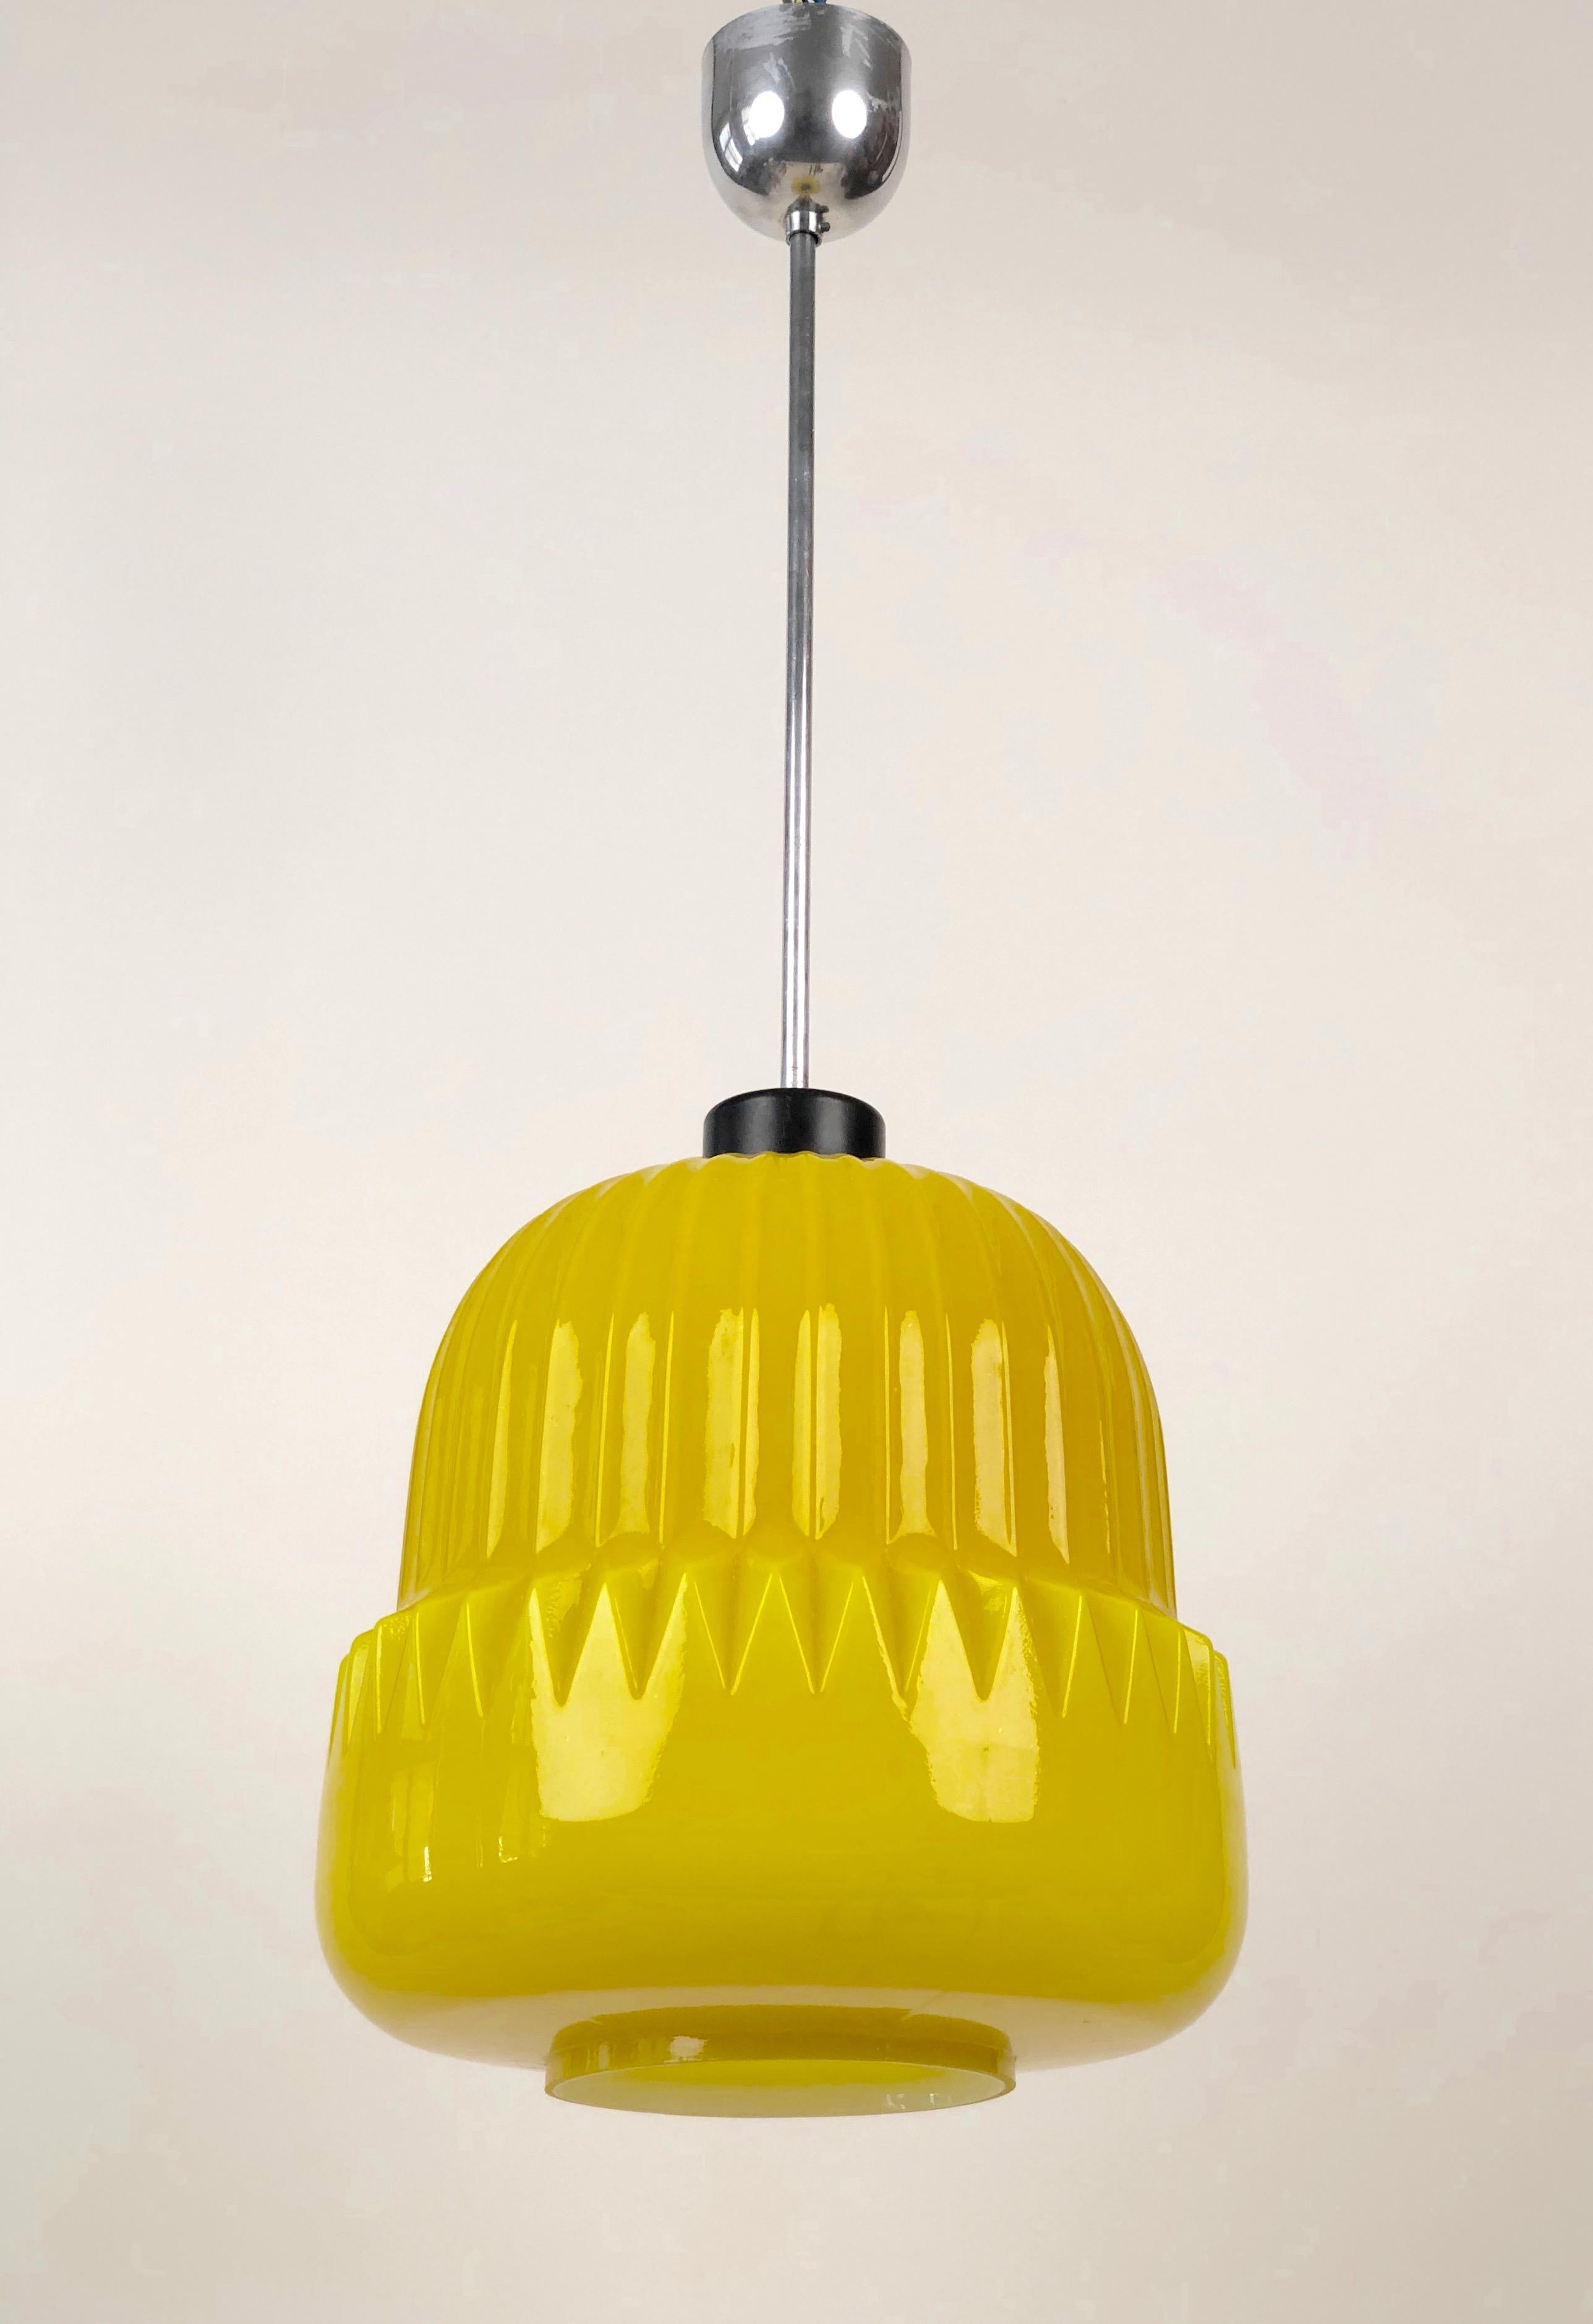 Une lampe suspendue unique du début des années 1960, fabriquée en Tchécoslovaquie. L'abat-jour en verre jaune présente un motif cannelé moulé dans la forme du verre. La lumière émise est chaude et intense. Il brille. J'espère que j'ai réussi à